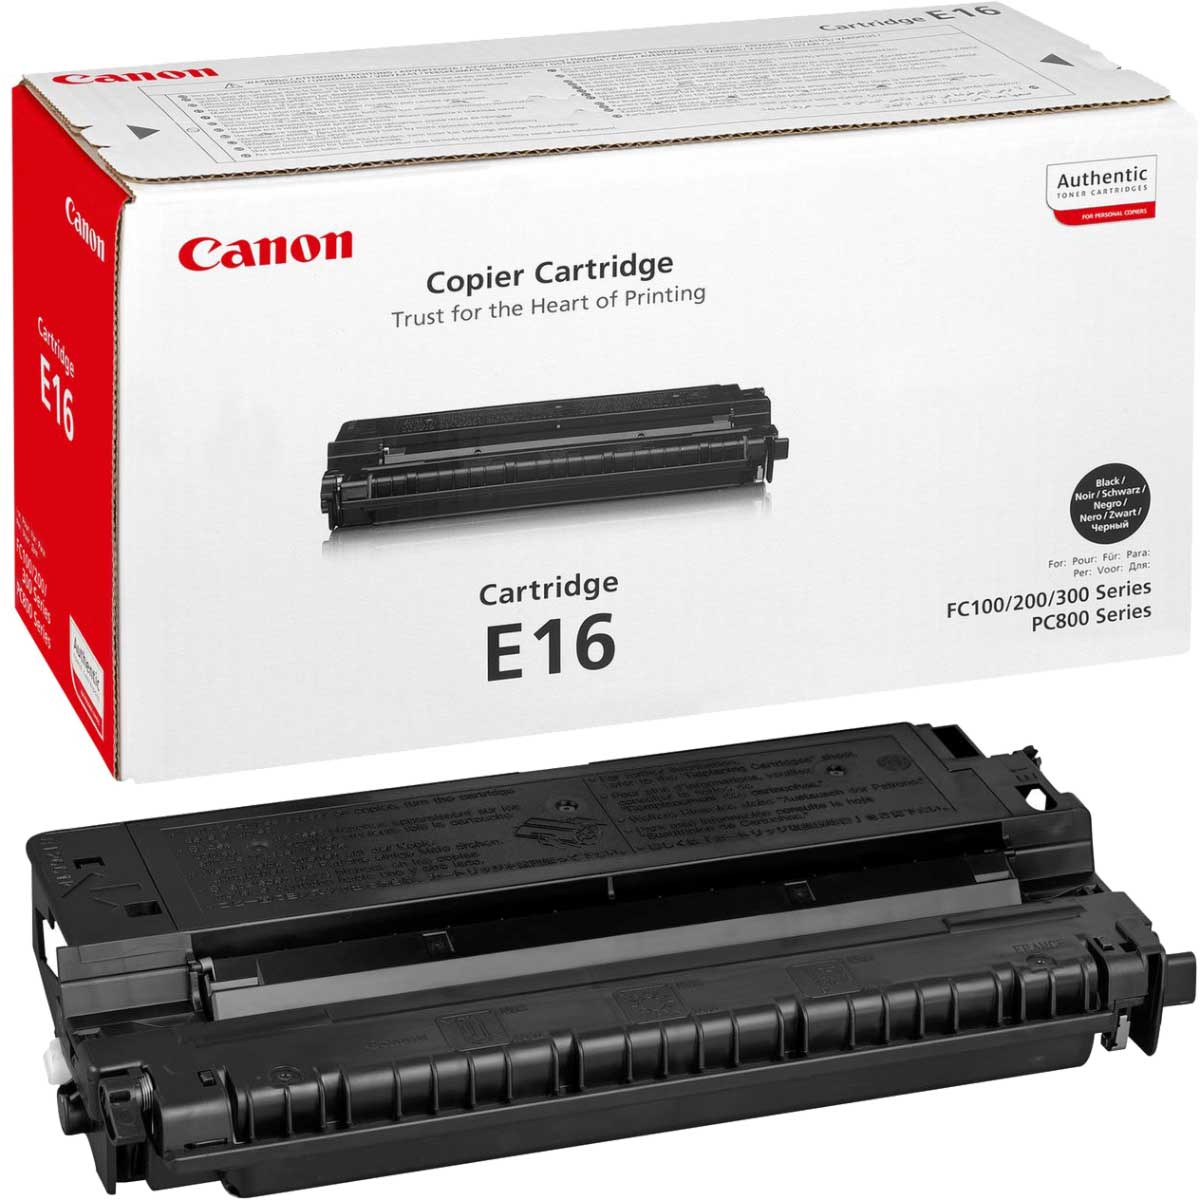 Картриджи Canon E16 для Canon i-Sensys FC-100 Купить комплект картриджей.